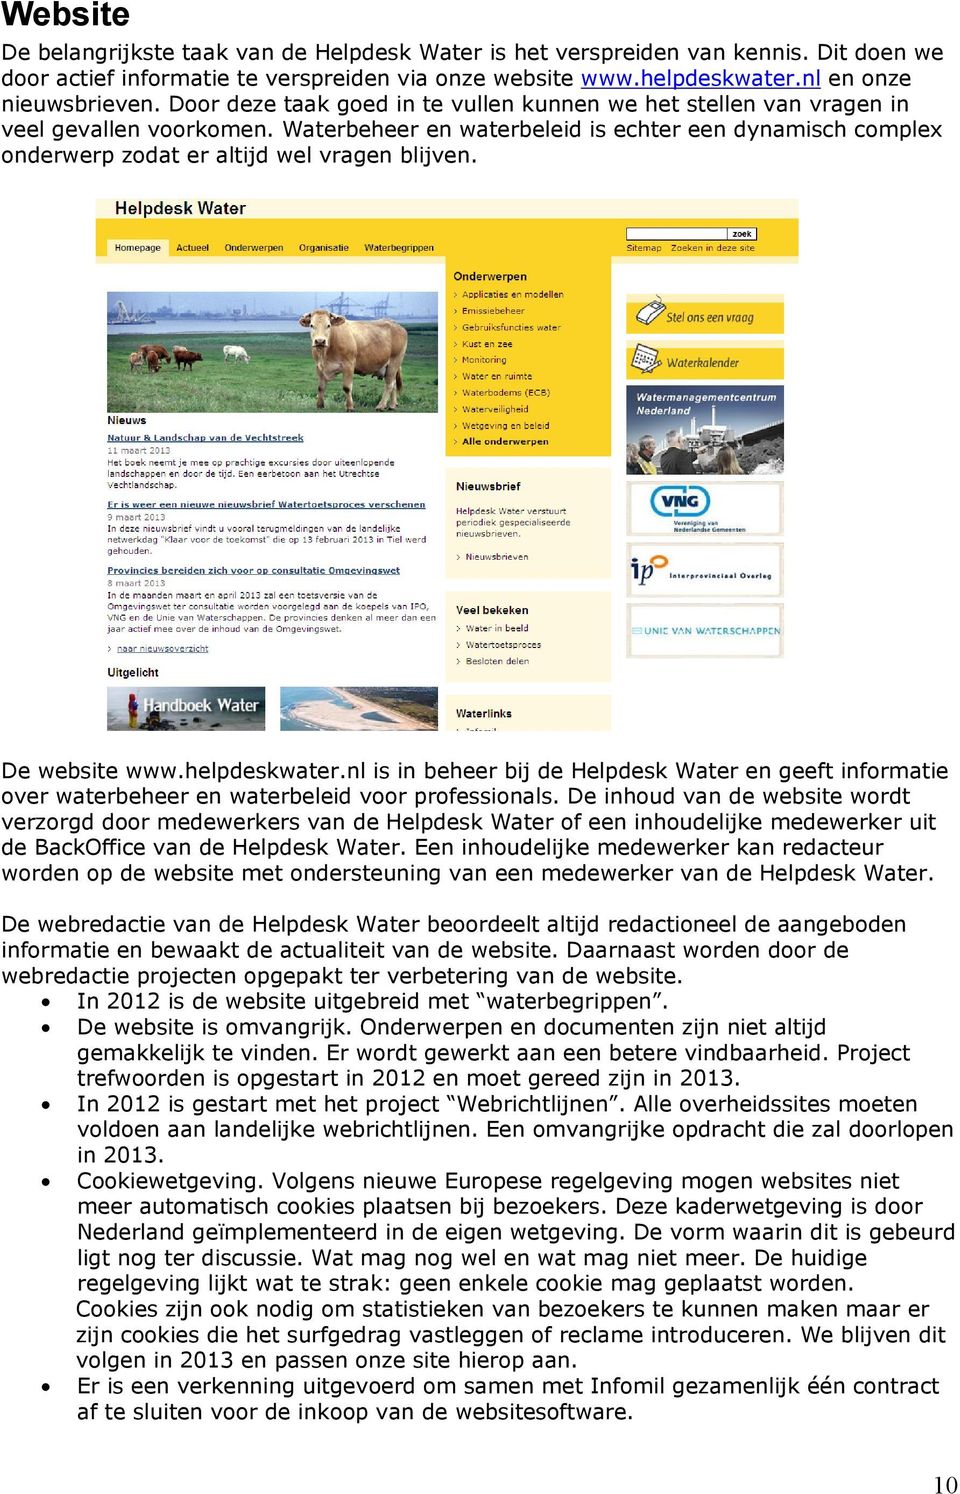 De website www.helpdeskwater.nl is in beheer bij de Helpdesk Water en geeft informatie over waterbeheer en waterbeleid voor professionals.